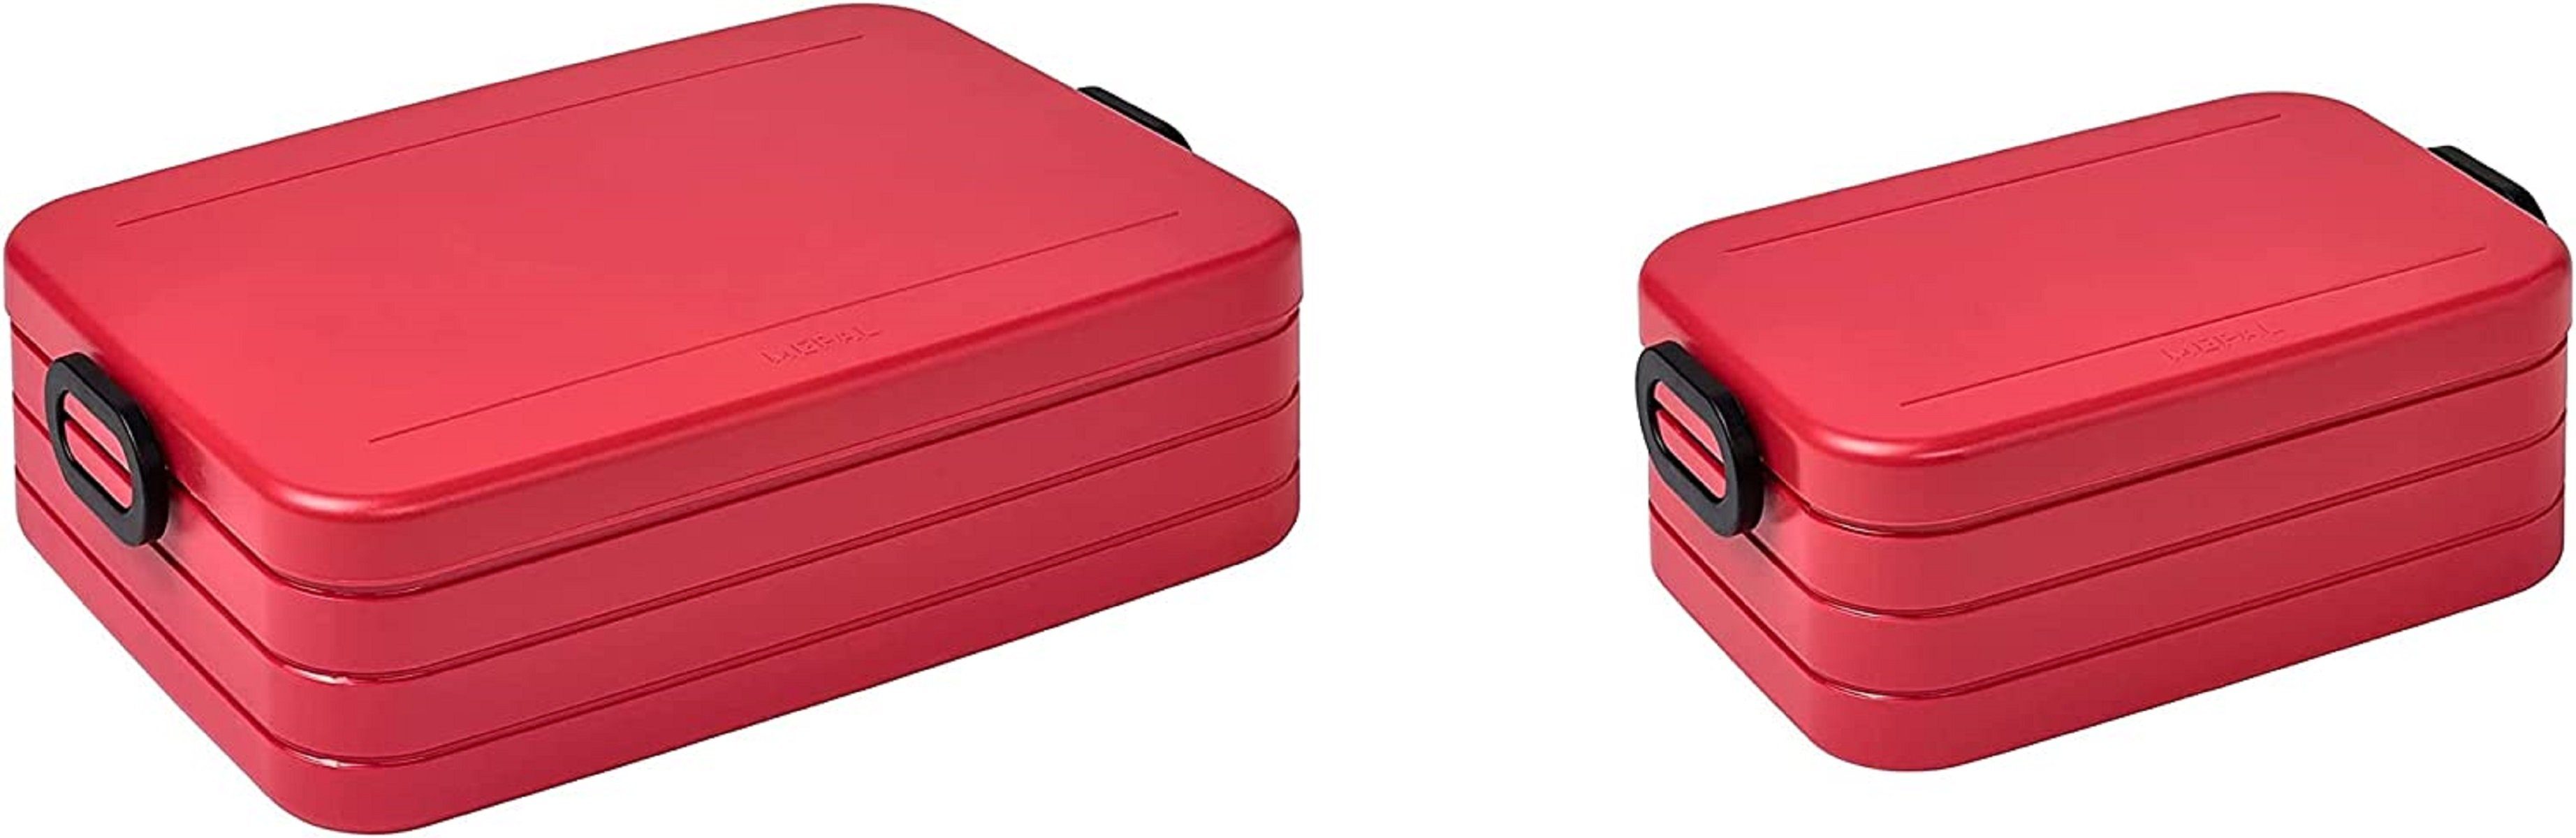 Mepal Lunchbox Mepal Take a Break Set – Nordic Red – Groß / Klein – Lunchbox mit Trennwand, Acrylnitril-Butadien-Styrol (ABS), (Set, 2-tlg., Lunchbox mit Trennwand groß und klein)